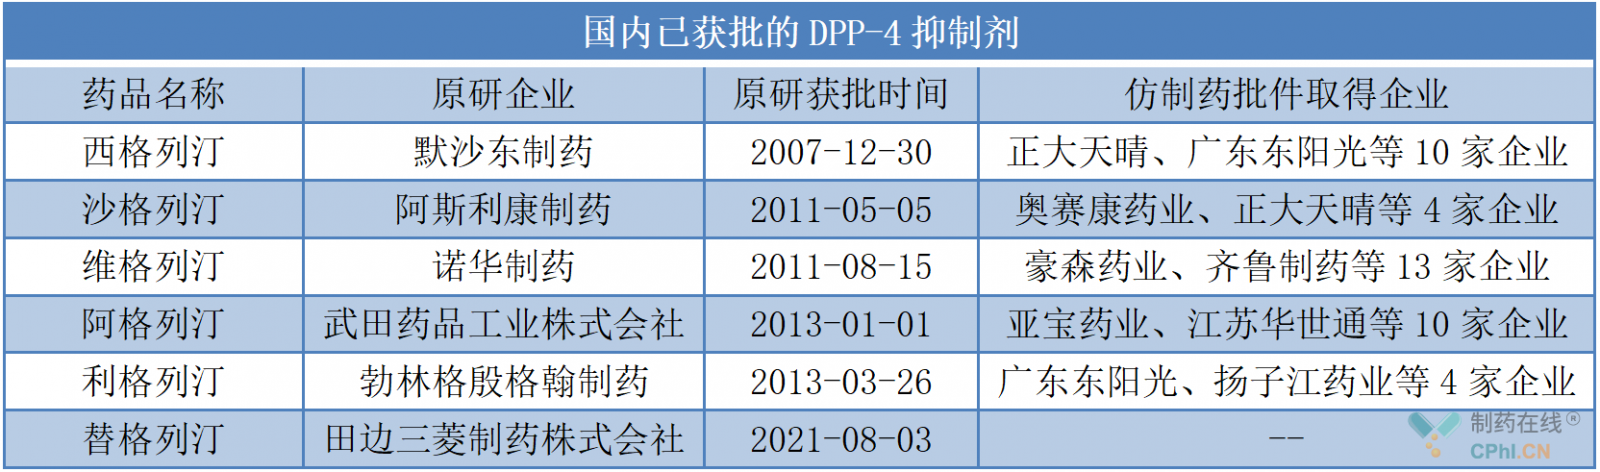 国内已获批的DPP-4抑制剂